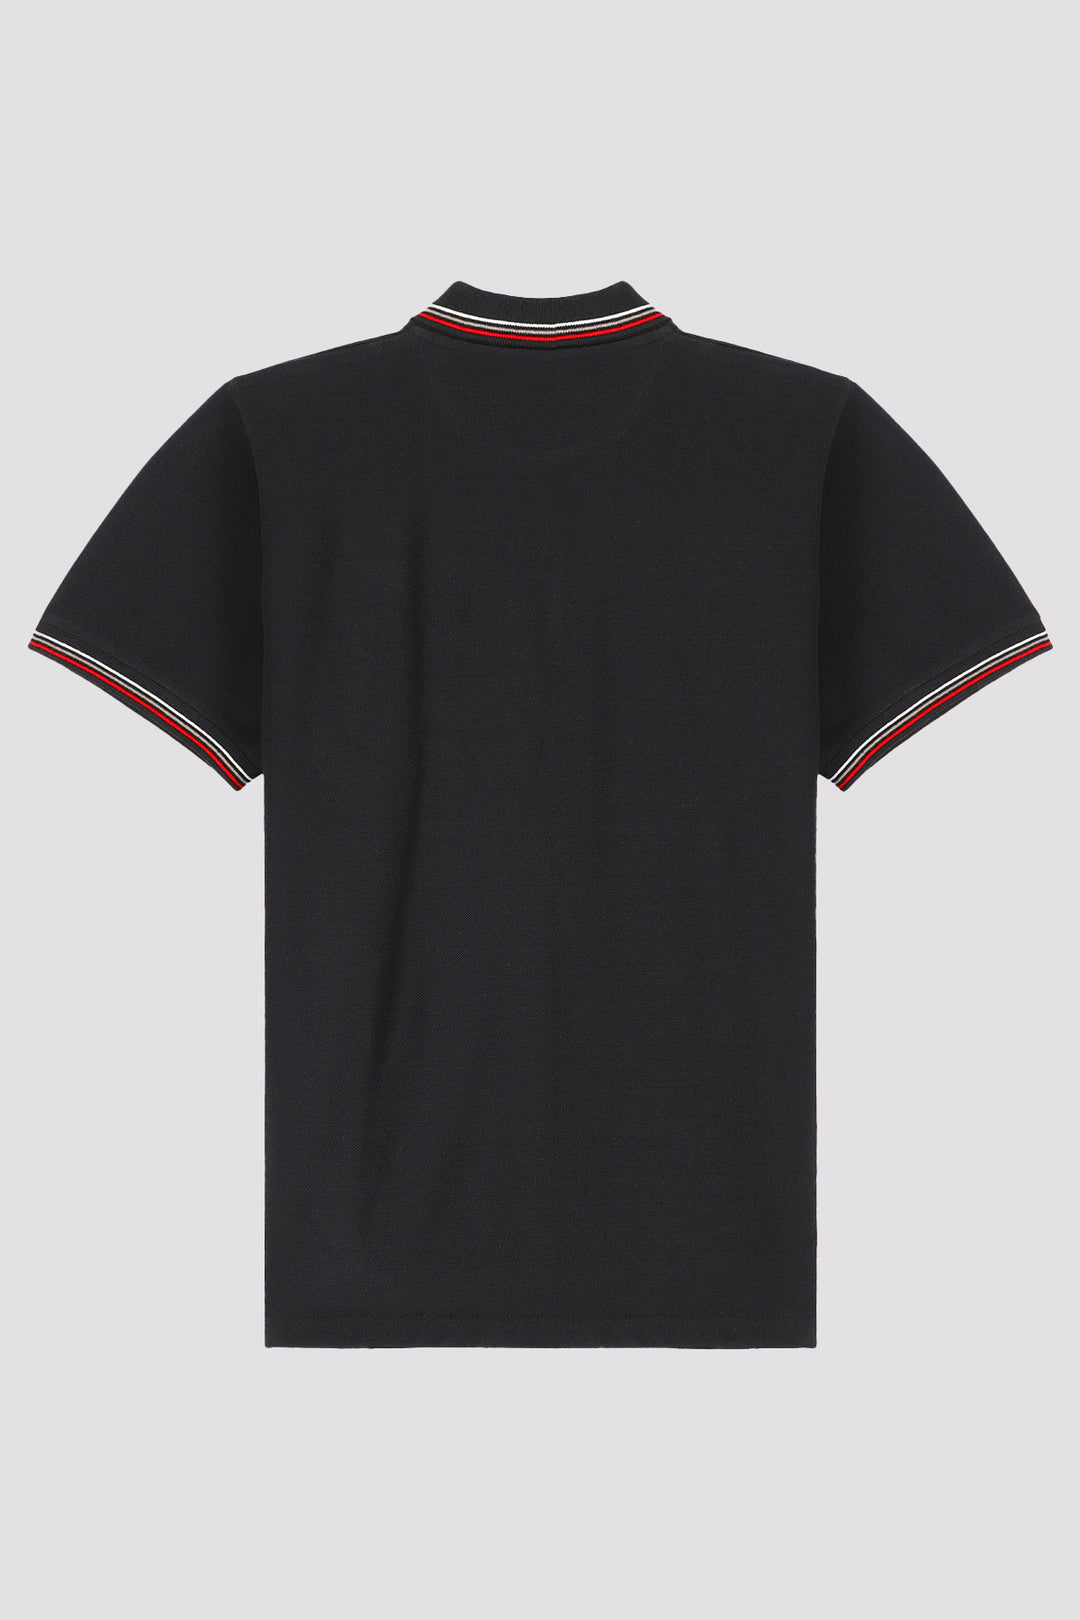 Black Multi-Striped Yarn Dyed Polo Shirt - A24 - MP0253R